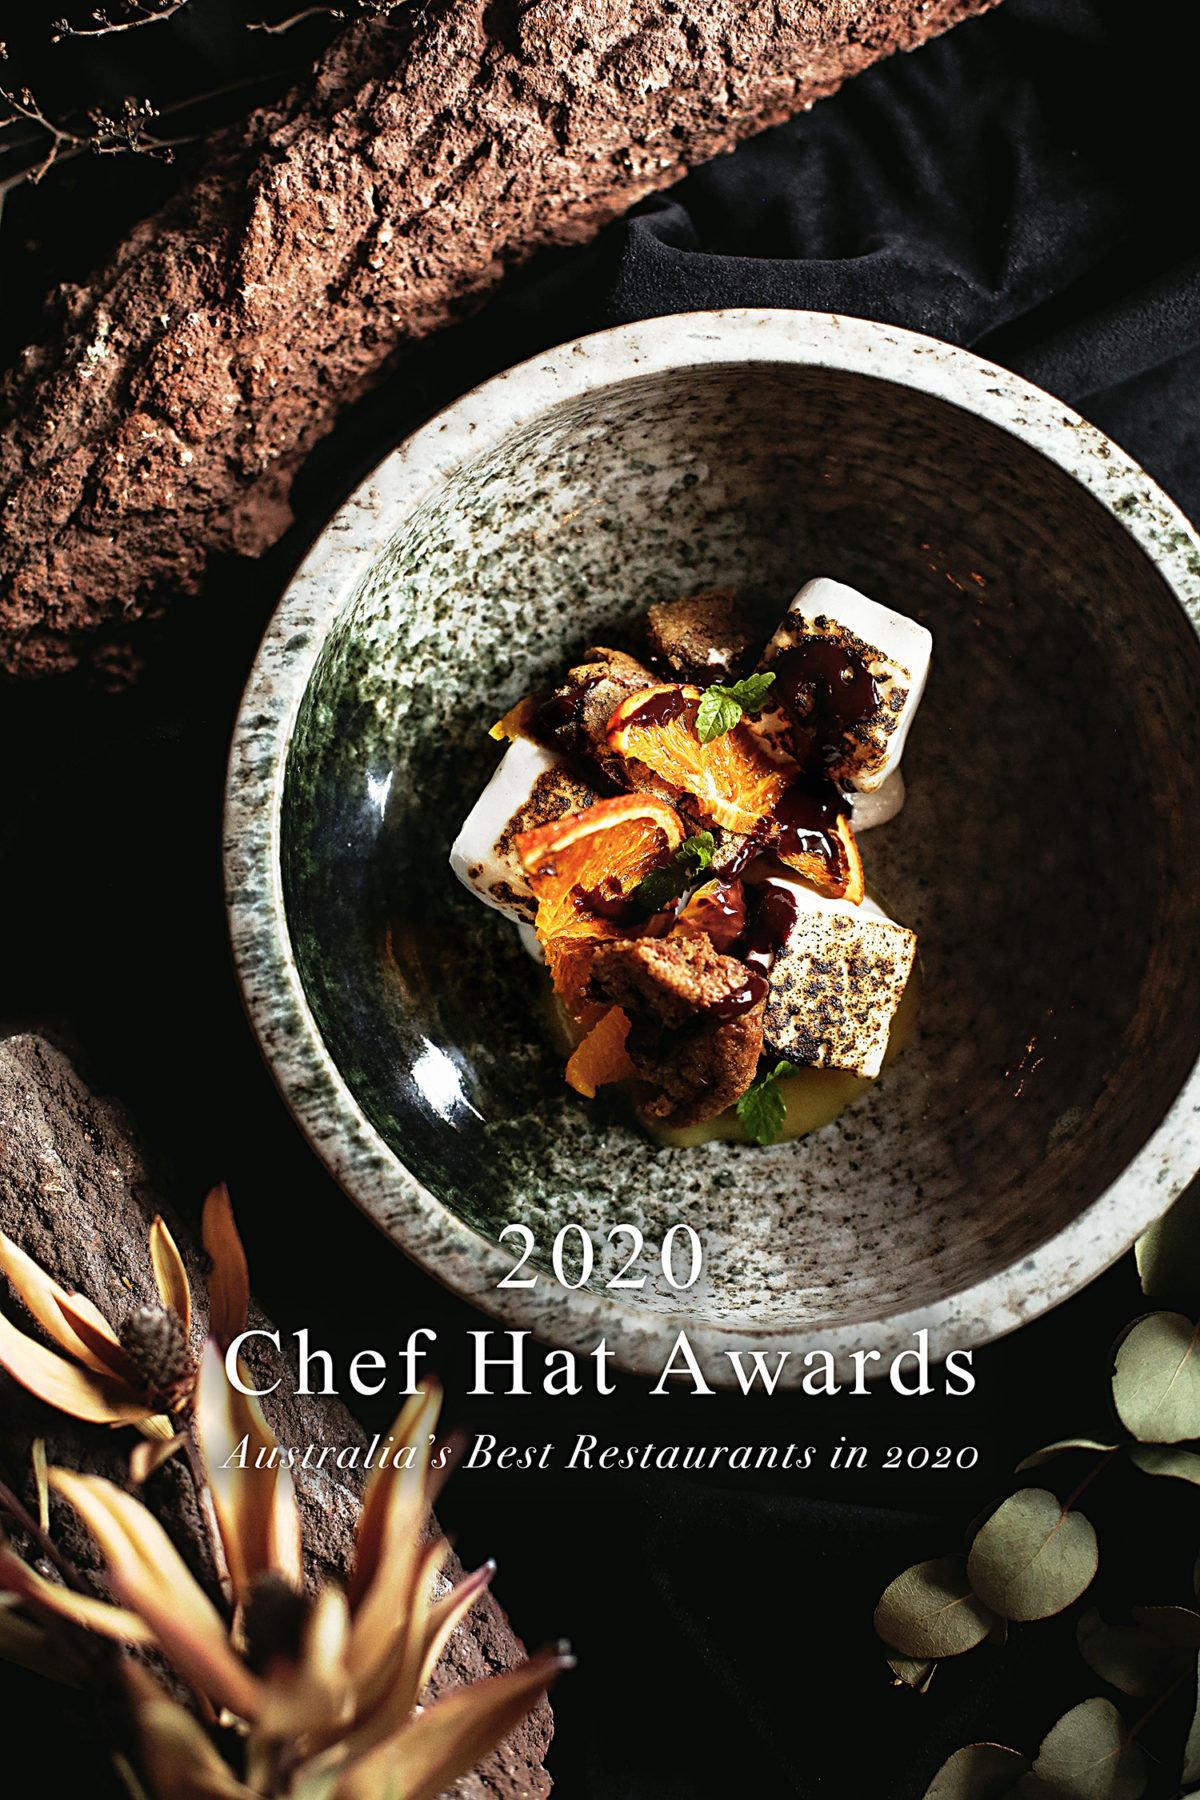 Top 10: Deer Duck Bistro | AGFG 2020 Chef Hat Awards